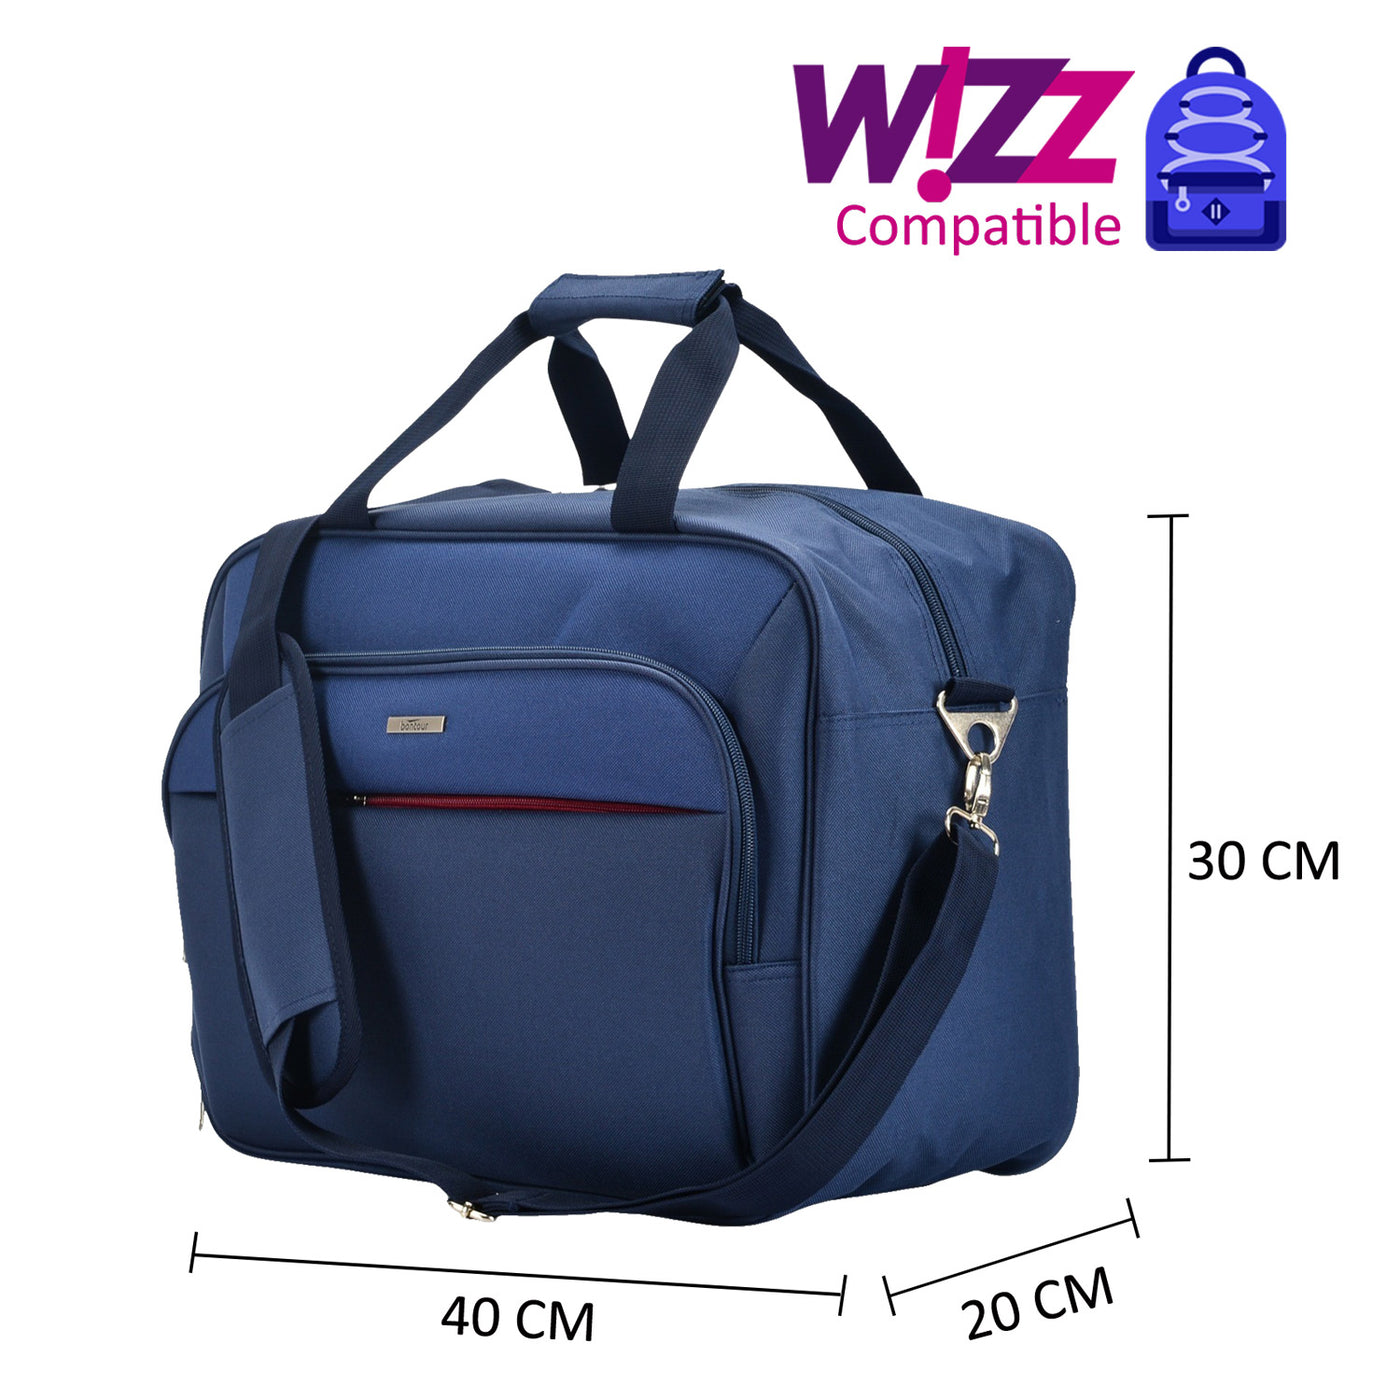 Bontour AIR Traveling bag, Wizzair cabin bag 40x30x20 cm Blue — BONTOUR